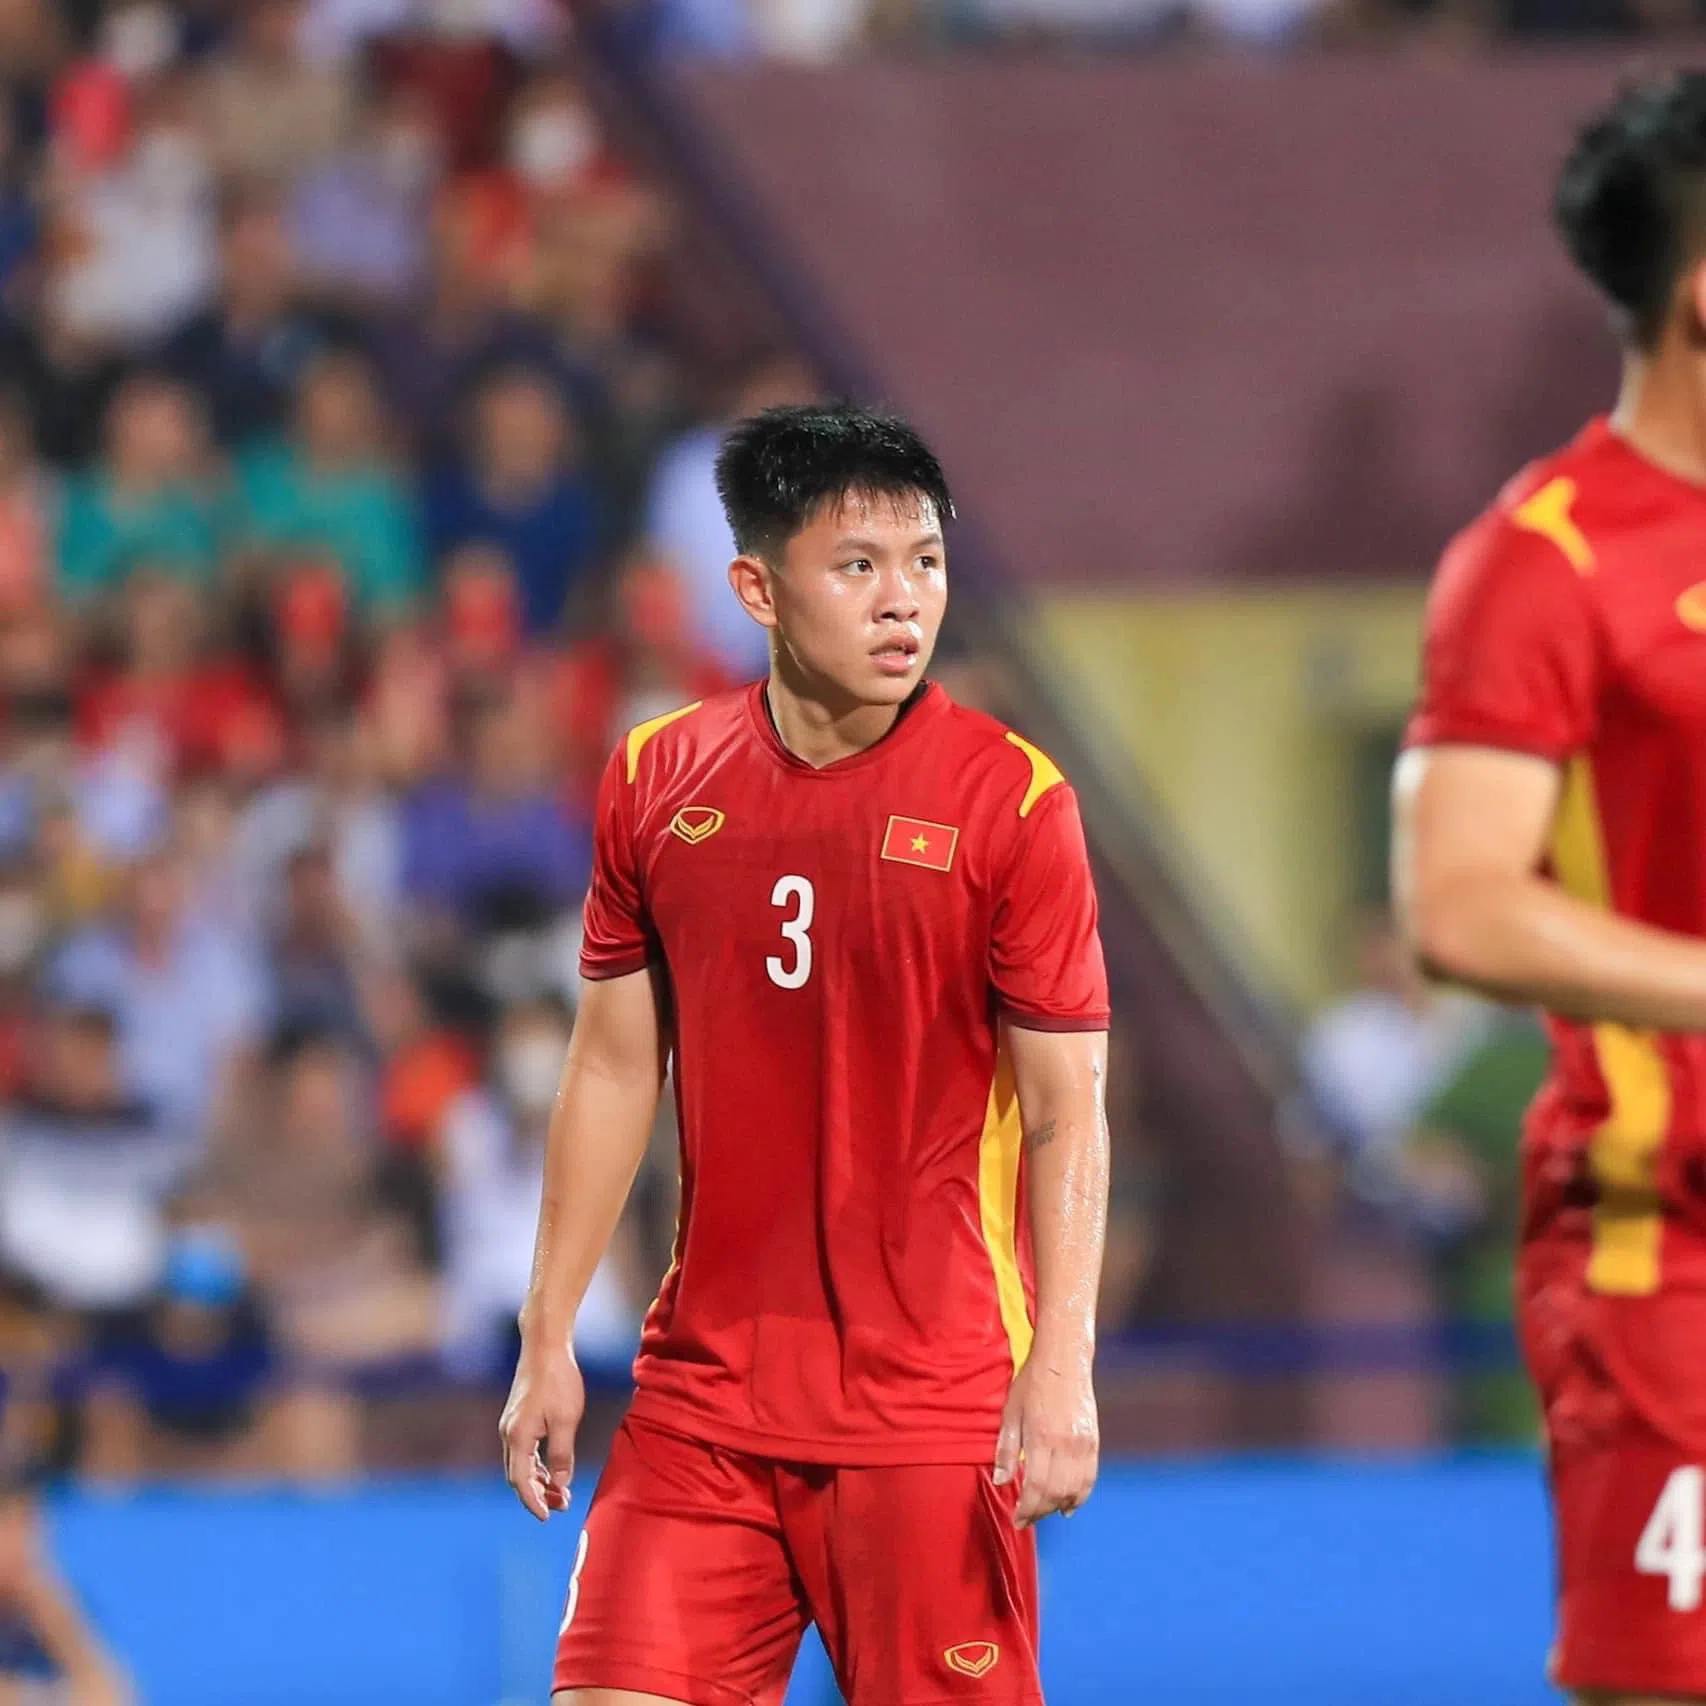 CLB Hà Nội 'biệt phái' tuyển thủ U23 Việt Nam xuống giải hạng Nhất